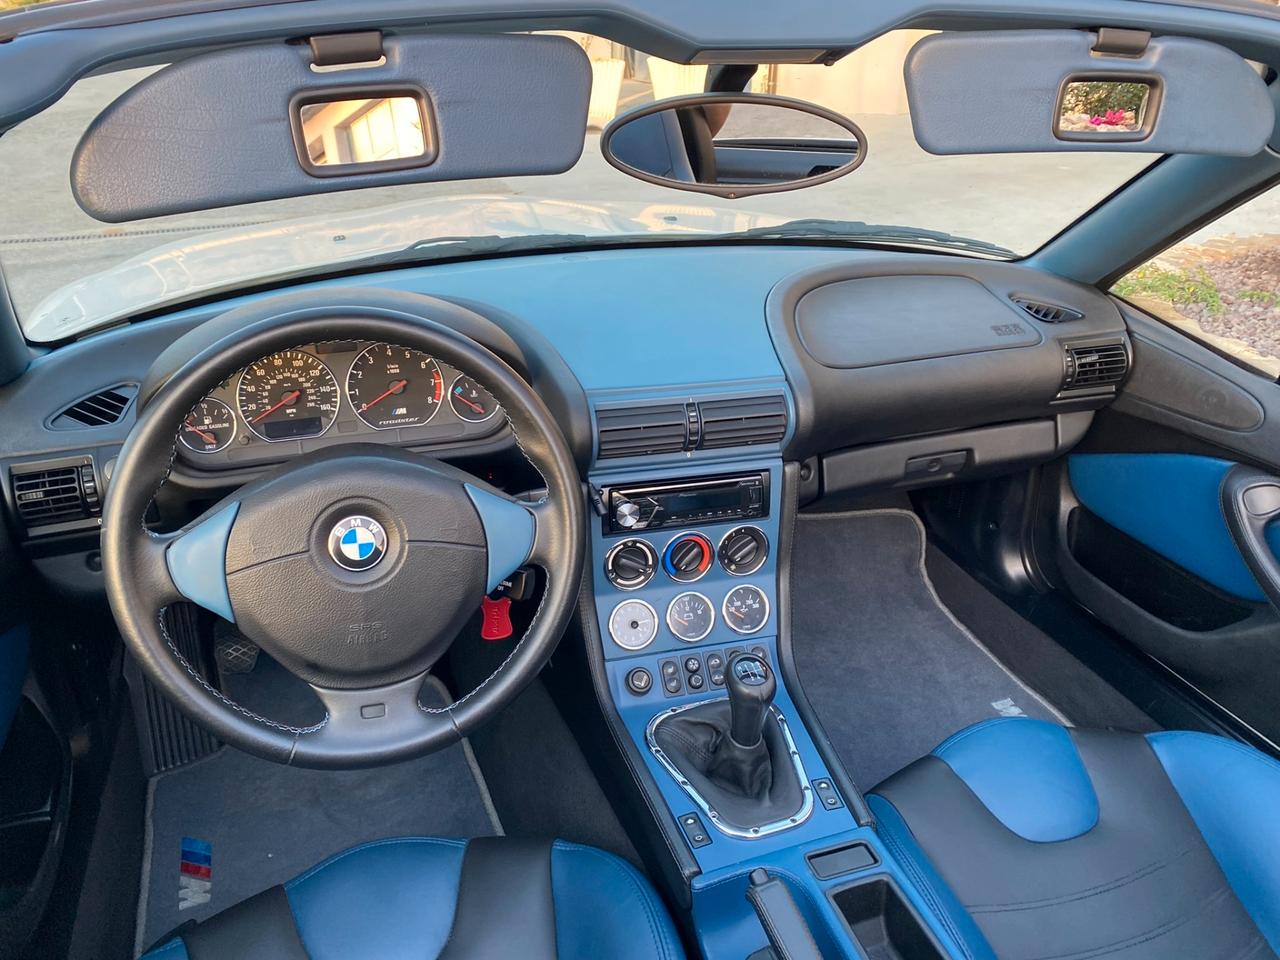 BMW Z3 M ROADSTER